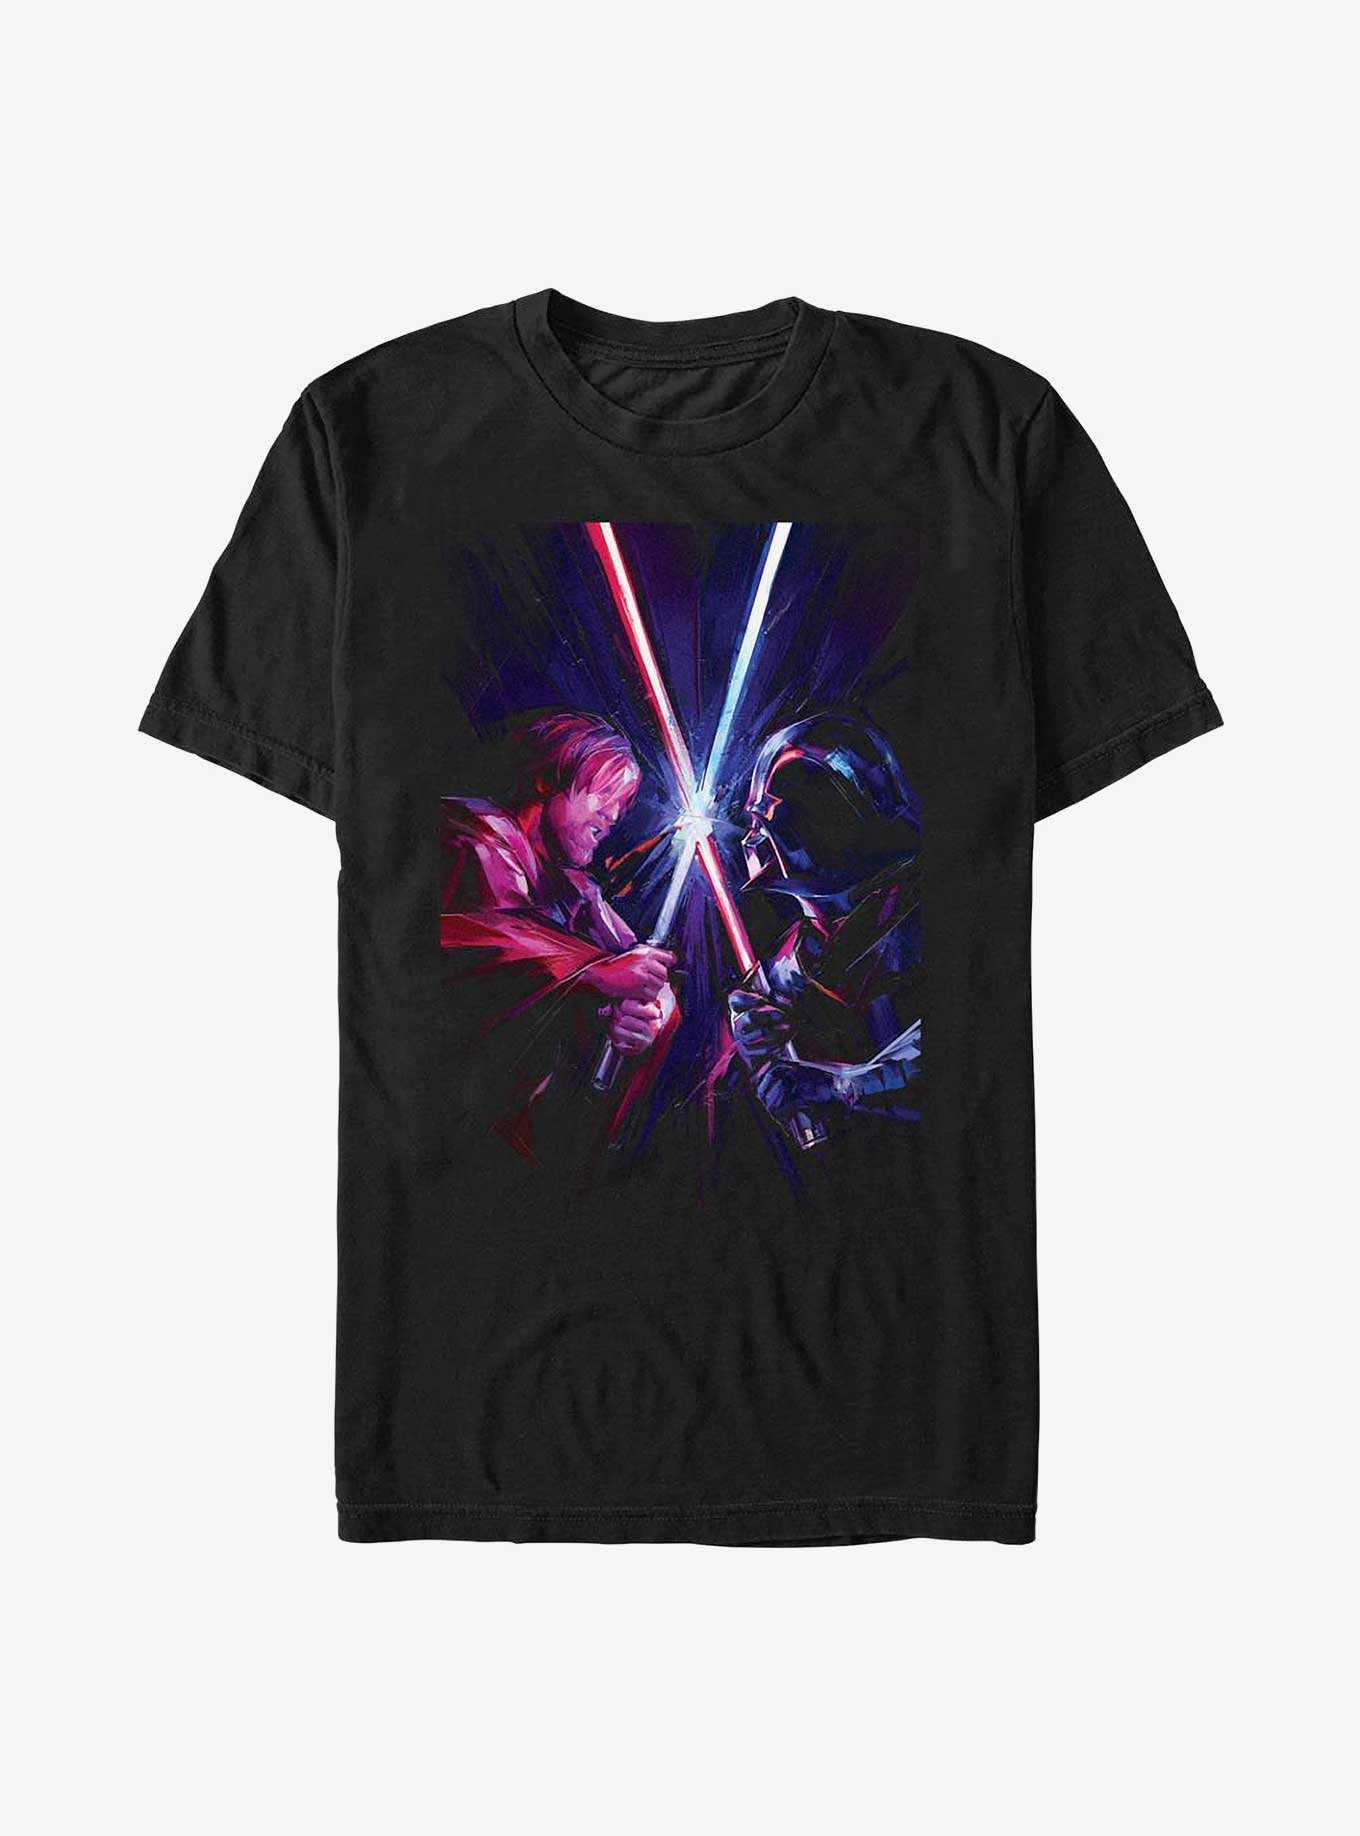 Star Wars Obi-Wan Kenobi Saber Clash T-Shirt, , hi-res